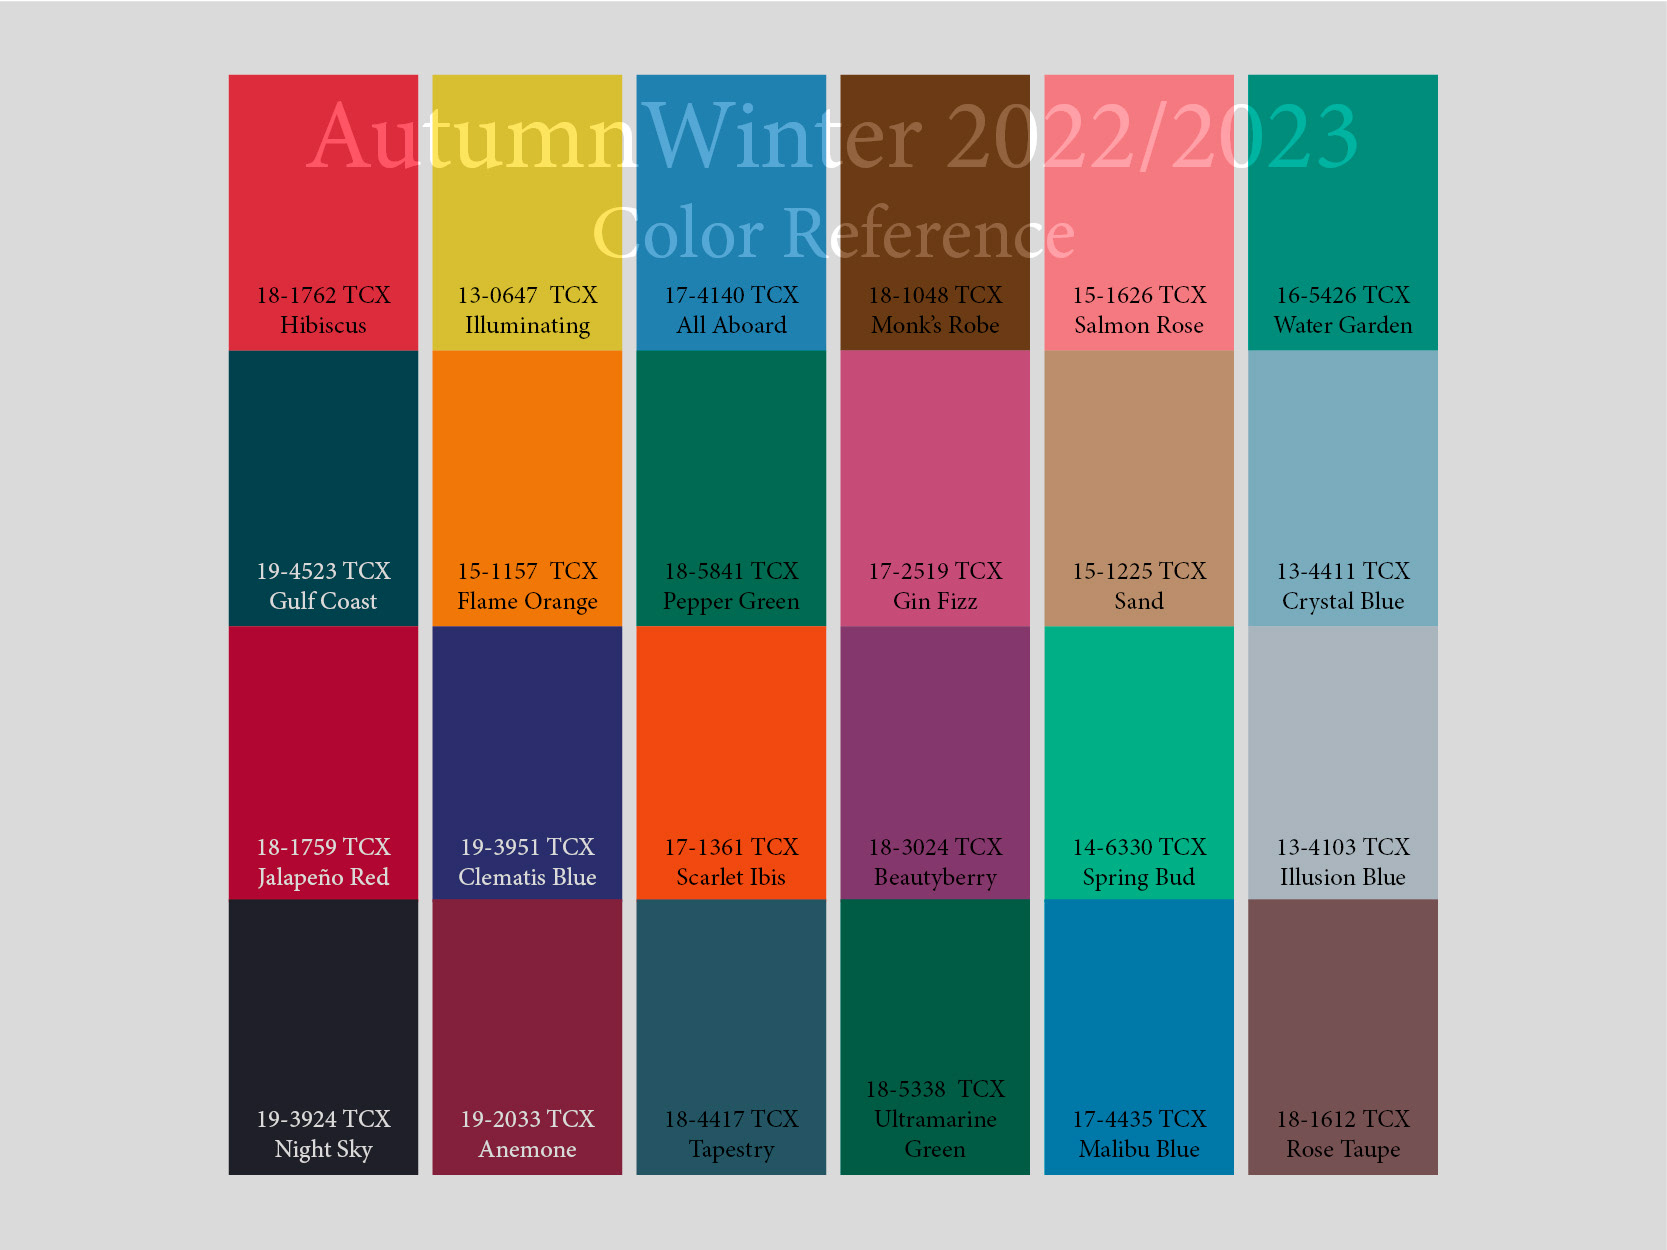 Модные цвета одежды осень-зима 2021-2022 (150 фото) - главные тренды